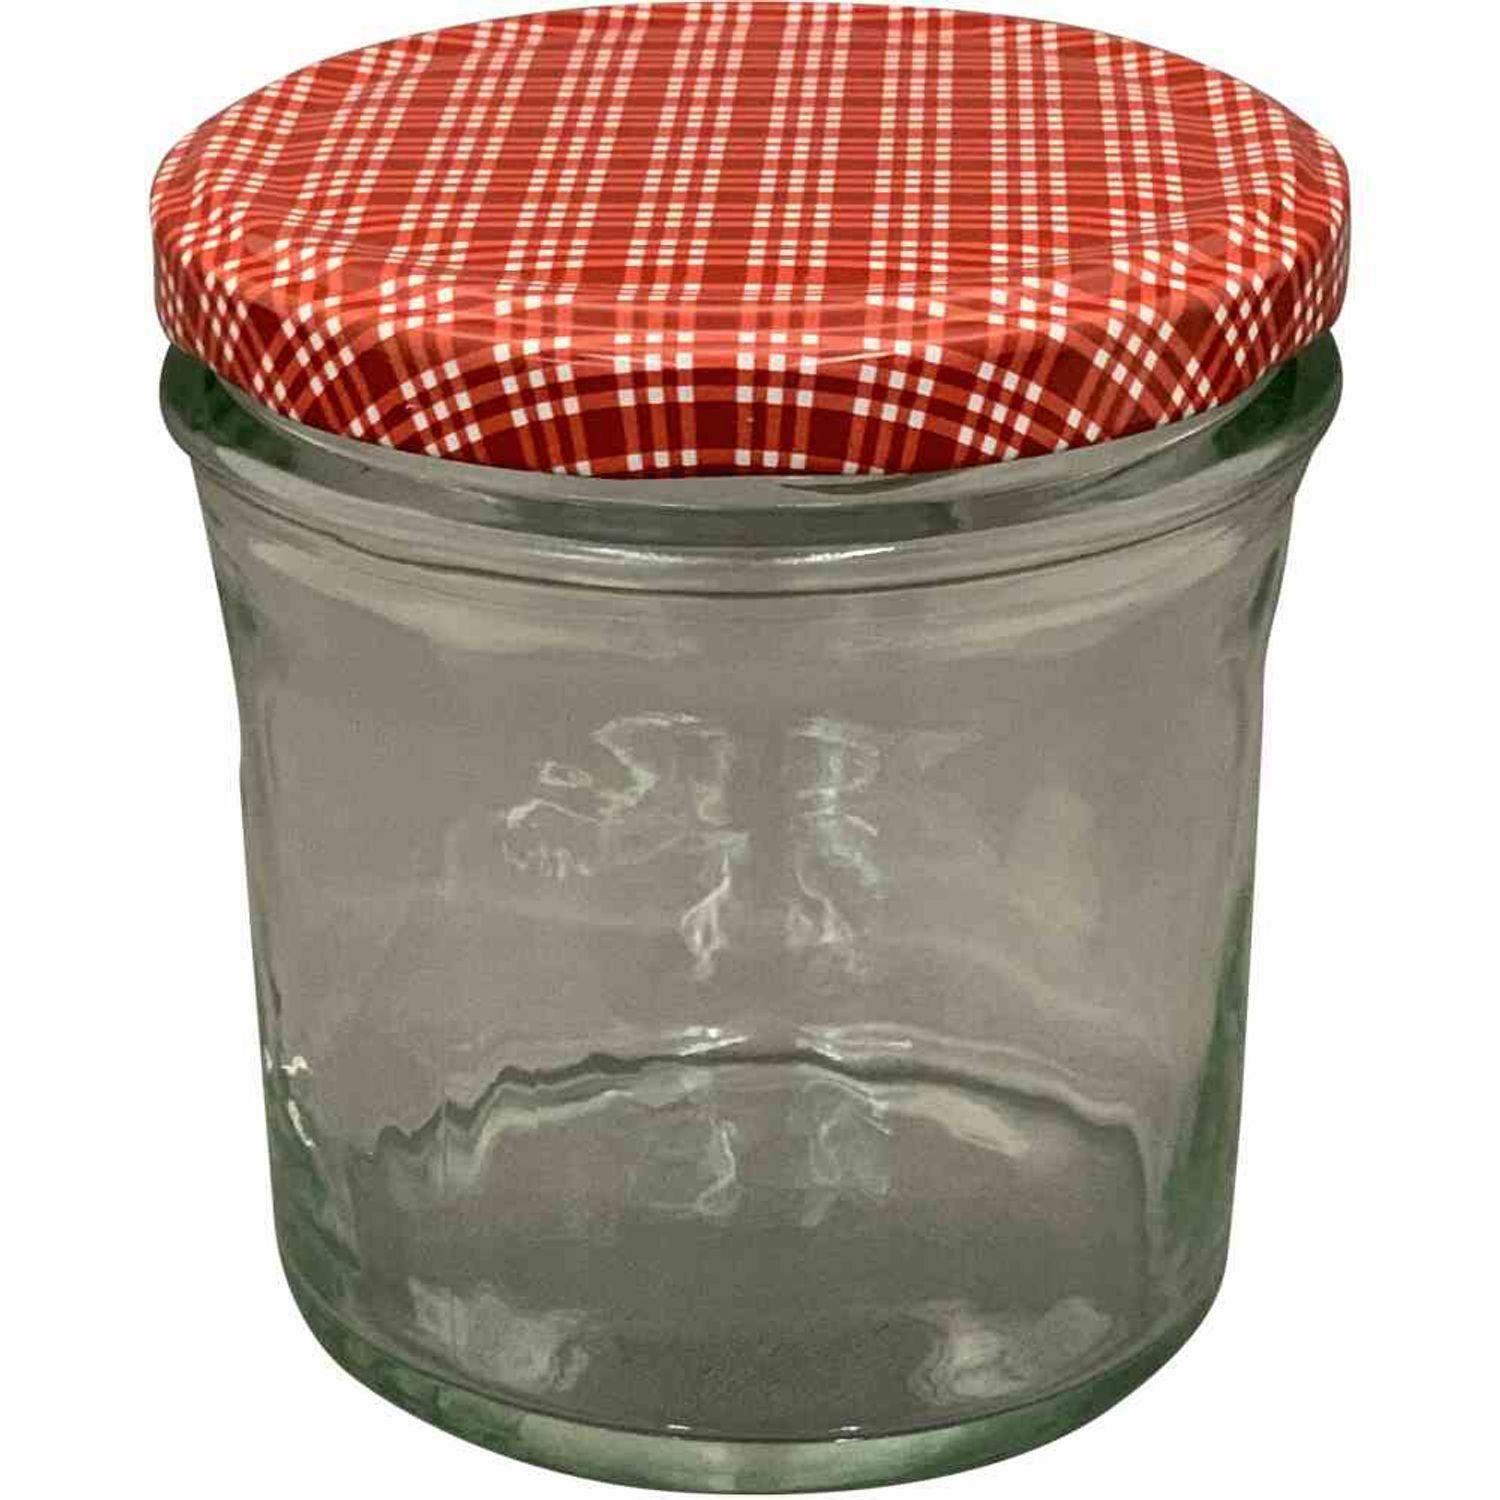 Siena Home Vorratsdose Sturz-Glas "Cucinare" 1TO340 rot/weiß, TwistOff 340 ml, Glas